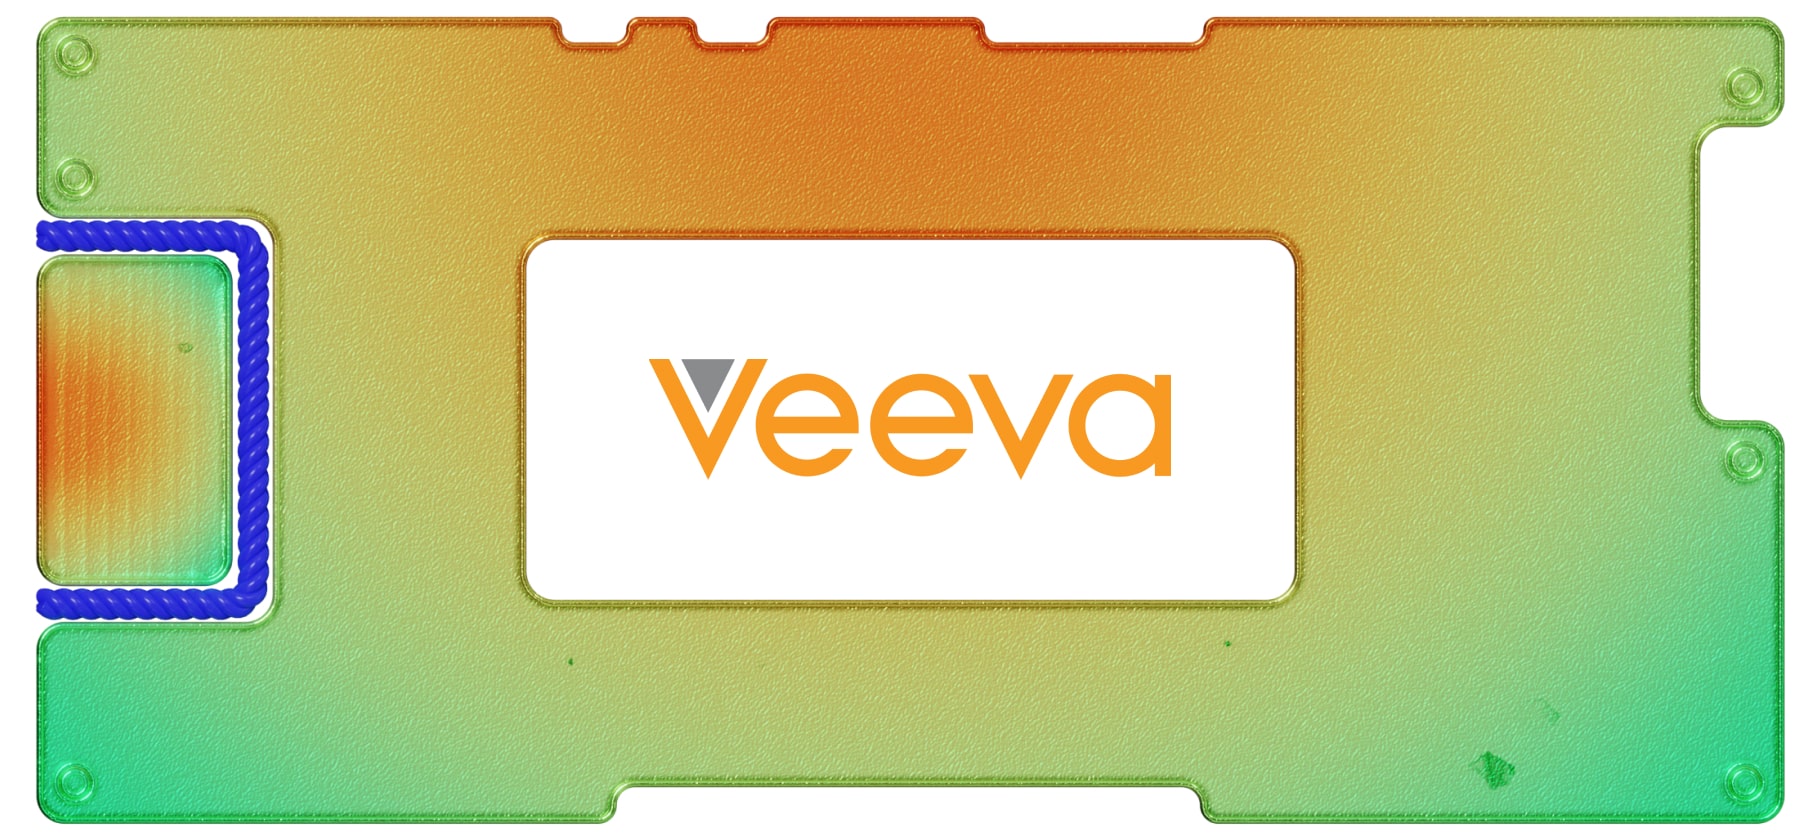 Инвестидея: Veeva Systems, потому что ИТ и биотех